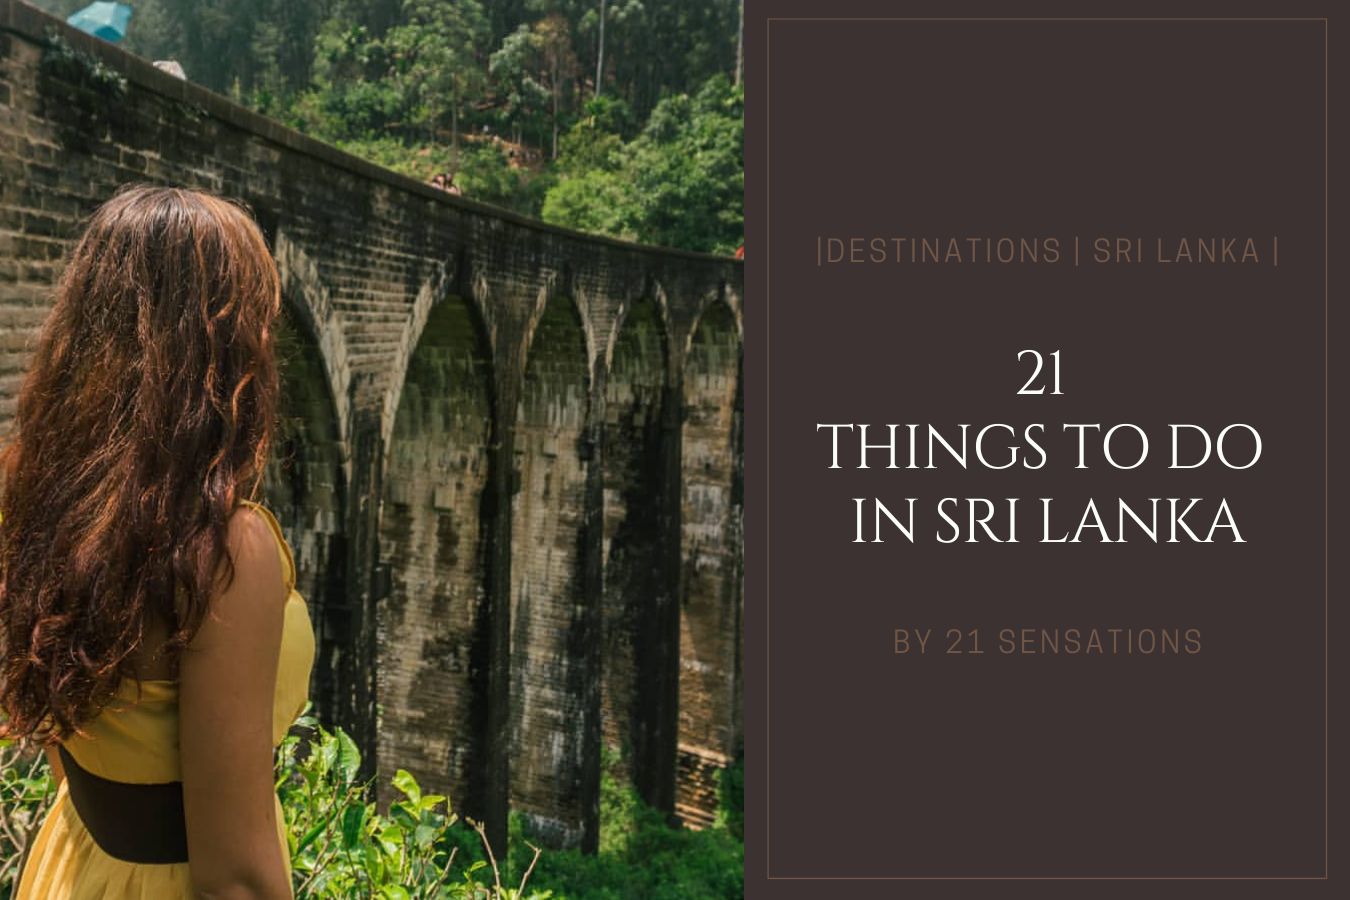 Sri Lanka Travel Guide 21 Things to Do in Sri Lanka